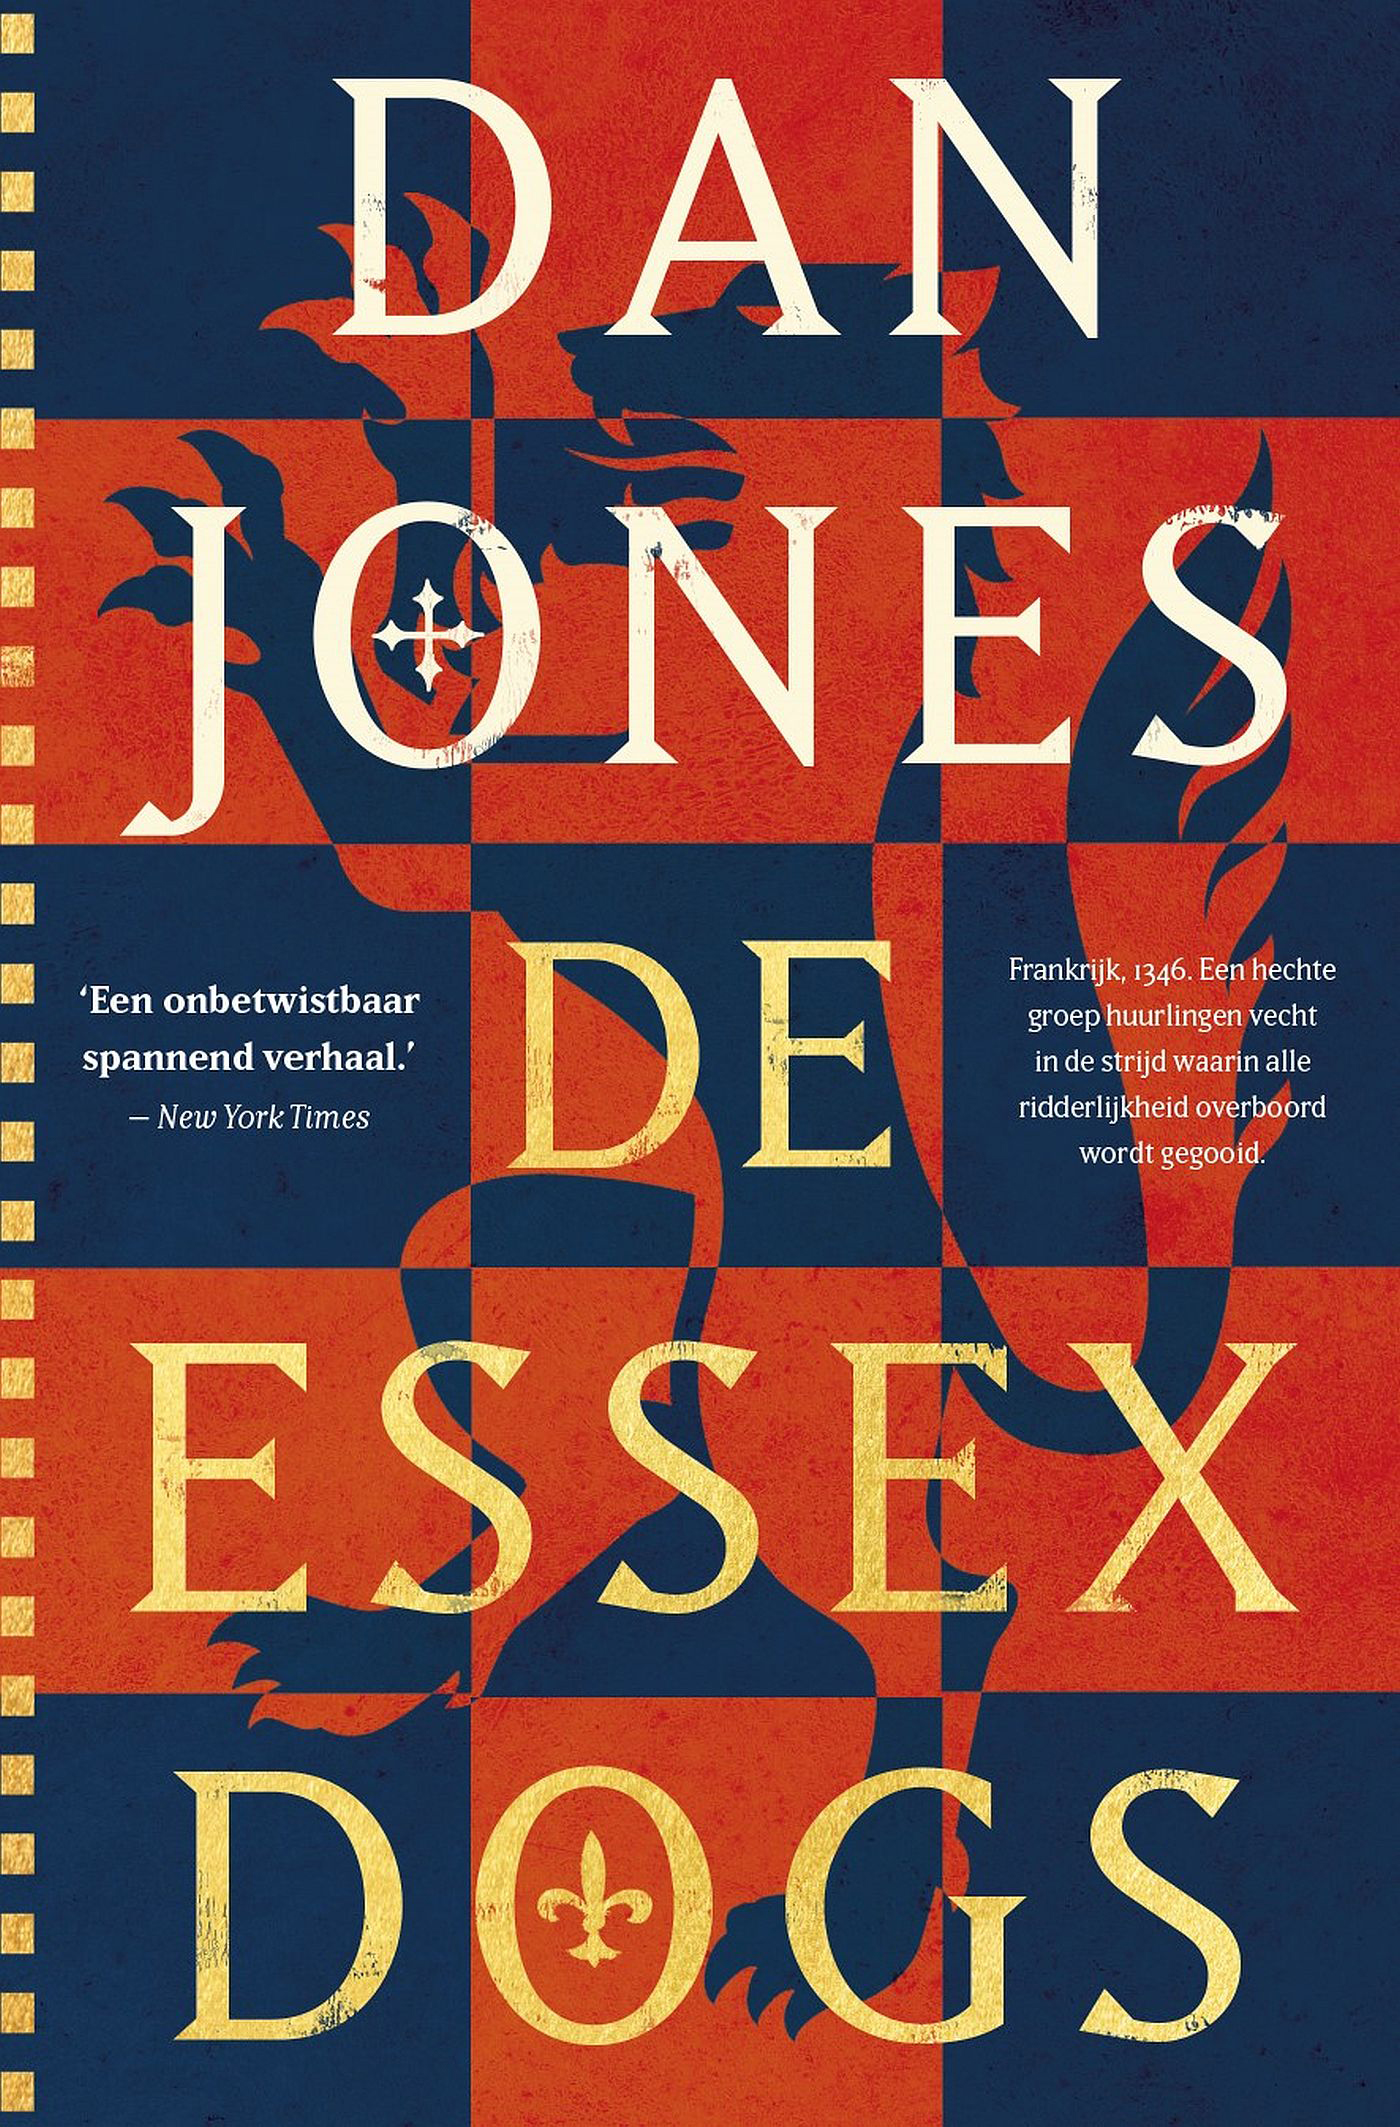 Jones, Dan-Essex Dogs, De